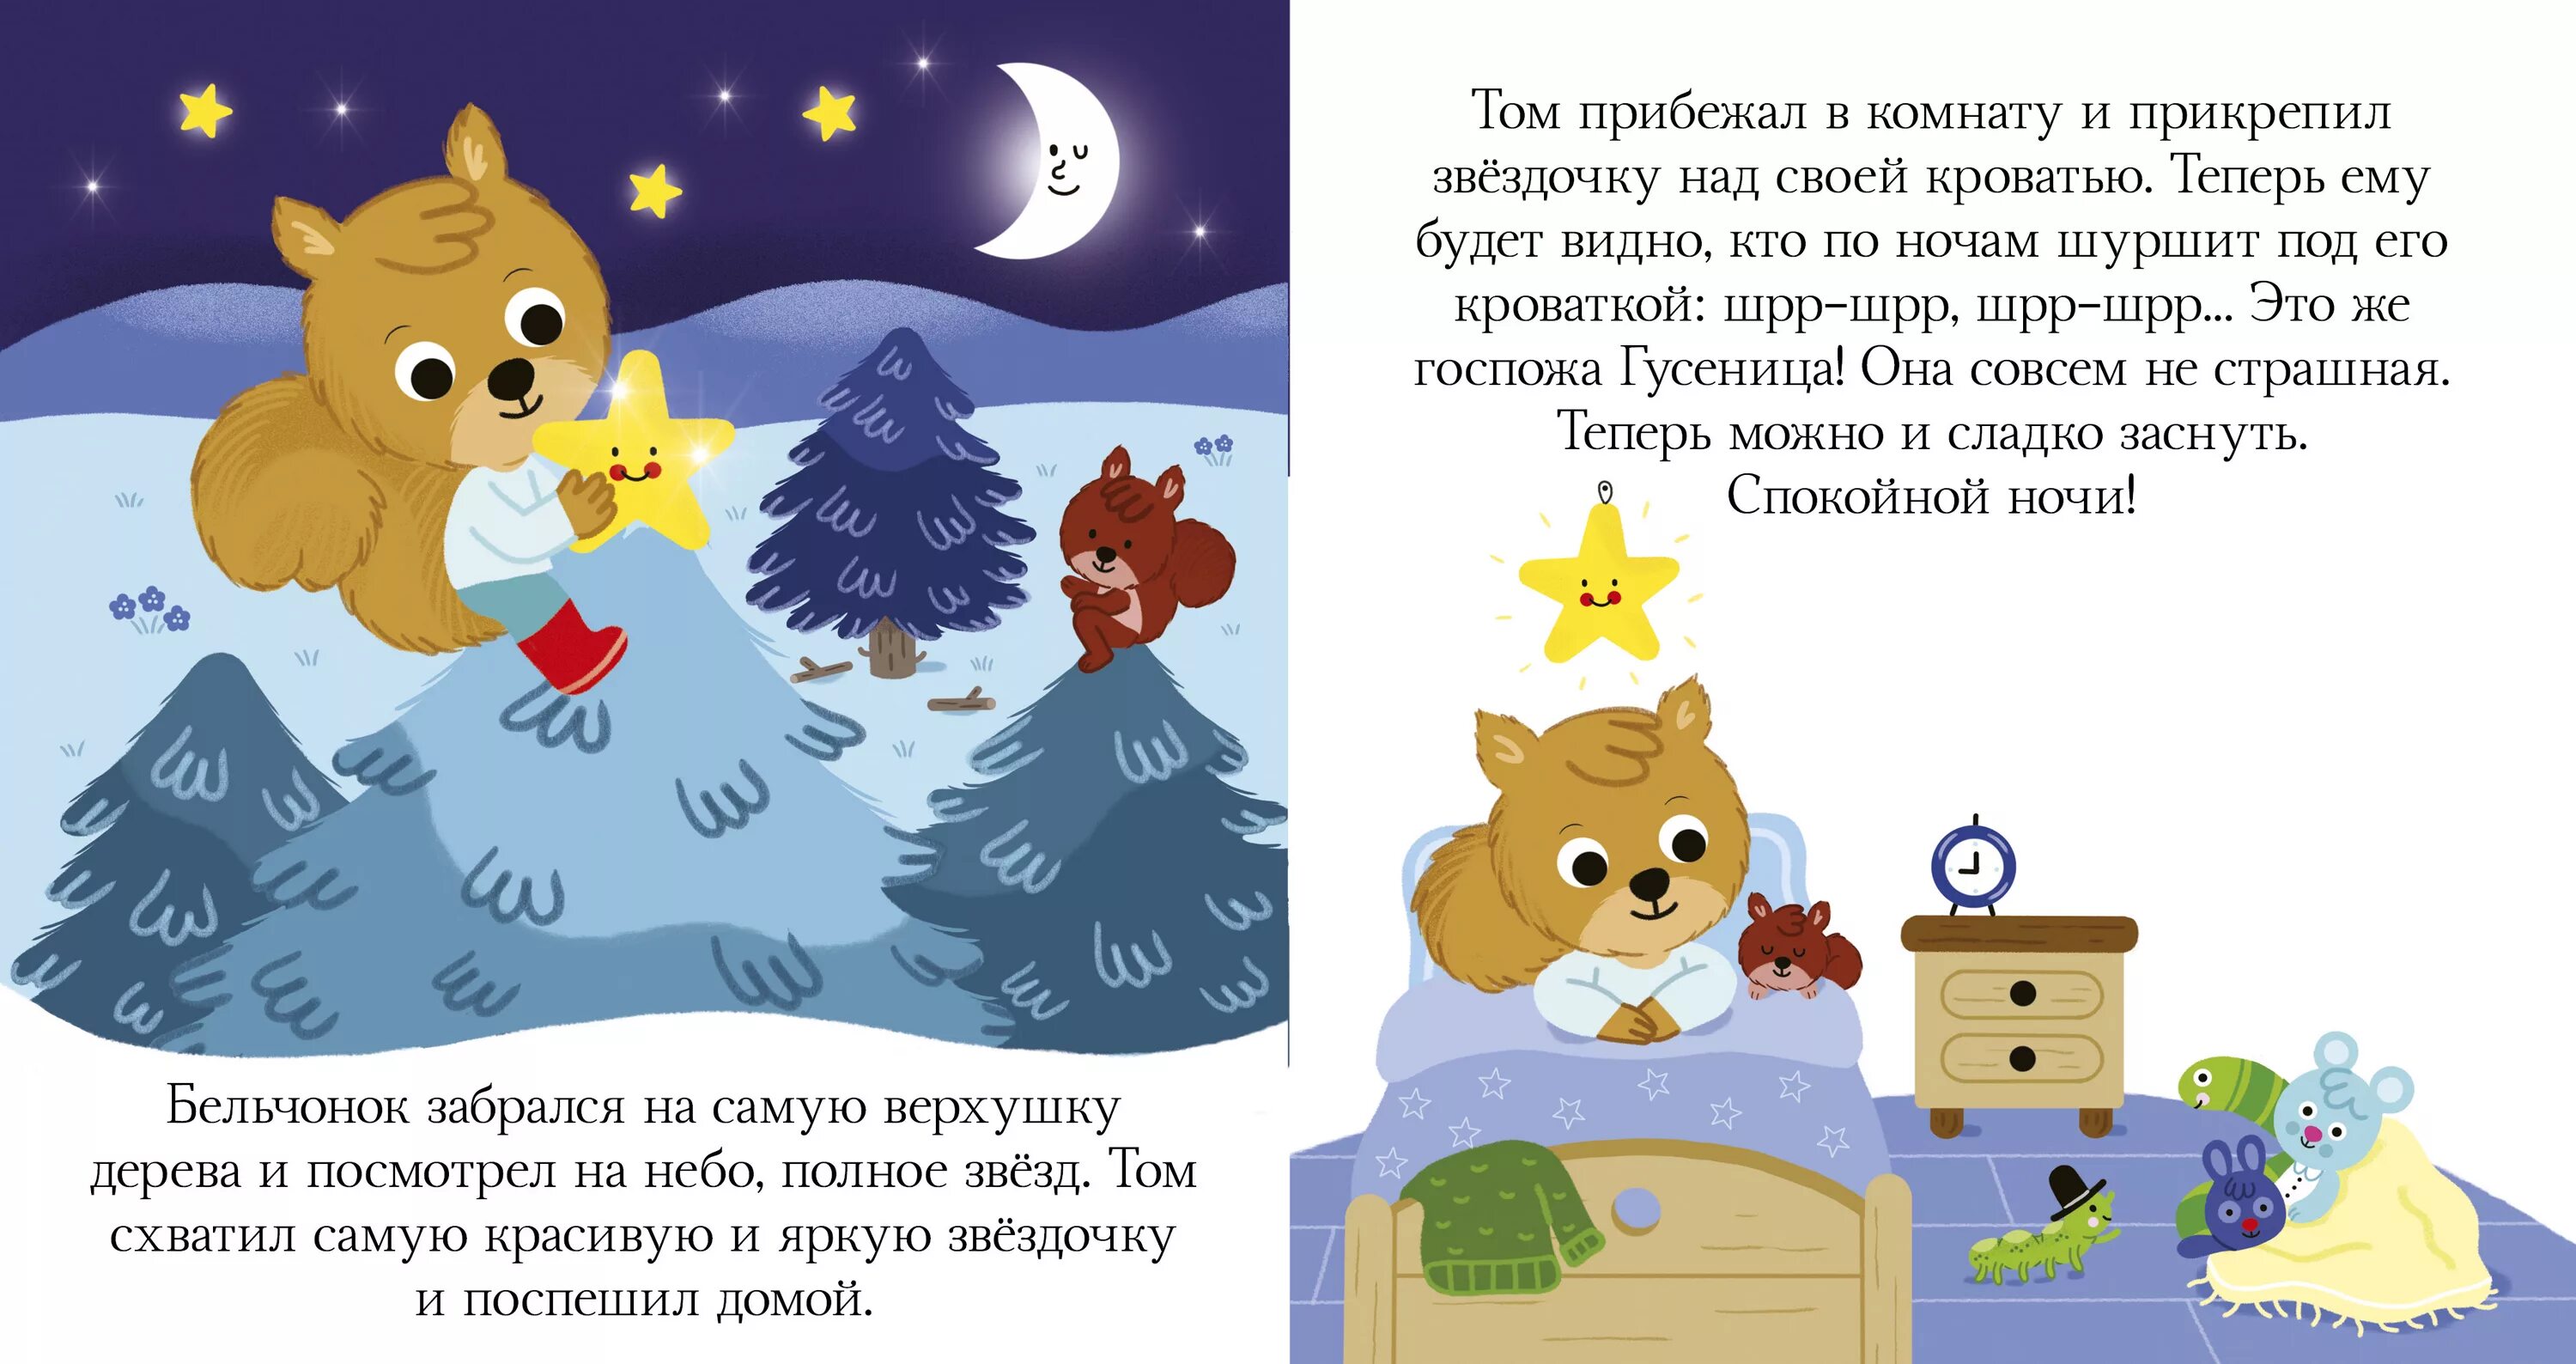 Сказка на ночь читать 9 10. Сказки на ночь для детей. Рассказы на ночь для детей. Интересные истории на ночь для детей. Короткие сказки на ночь для детей.